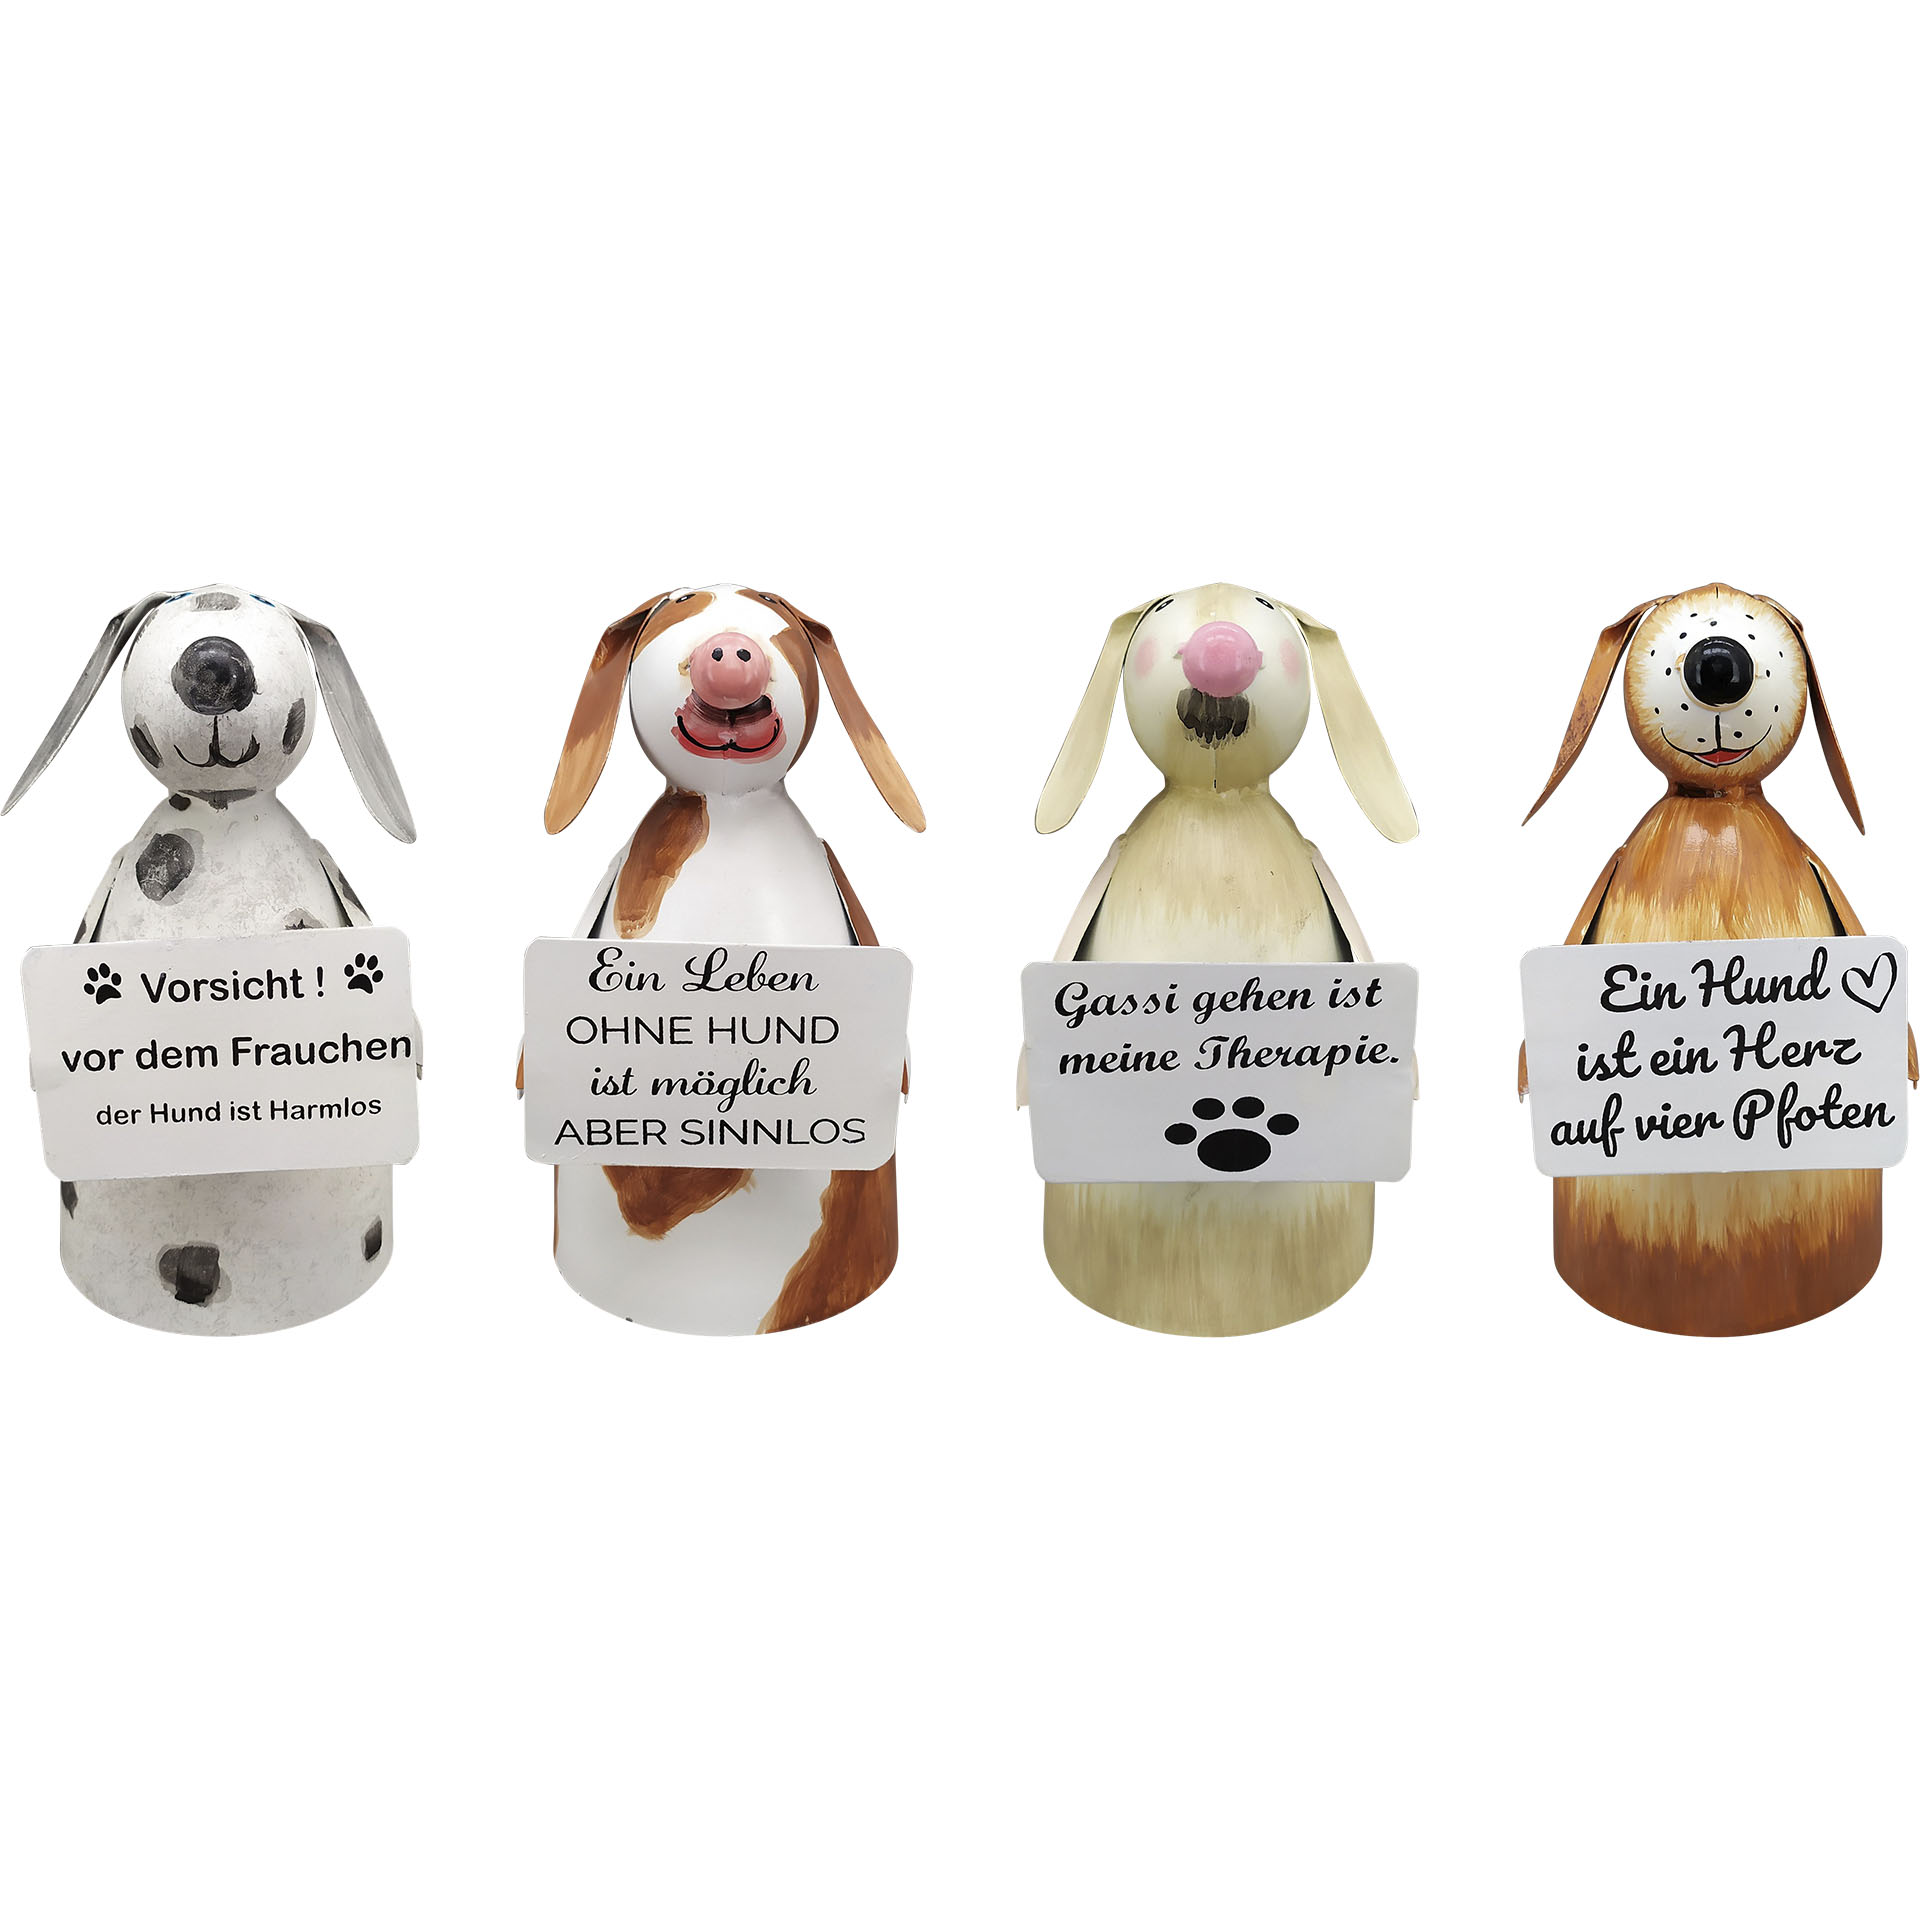 vier verschiedenfarbige Hunde mit vier verschiedenen Sprüchen auf Schild